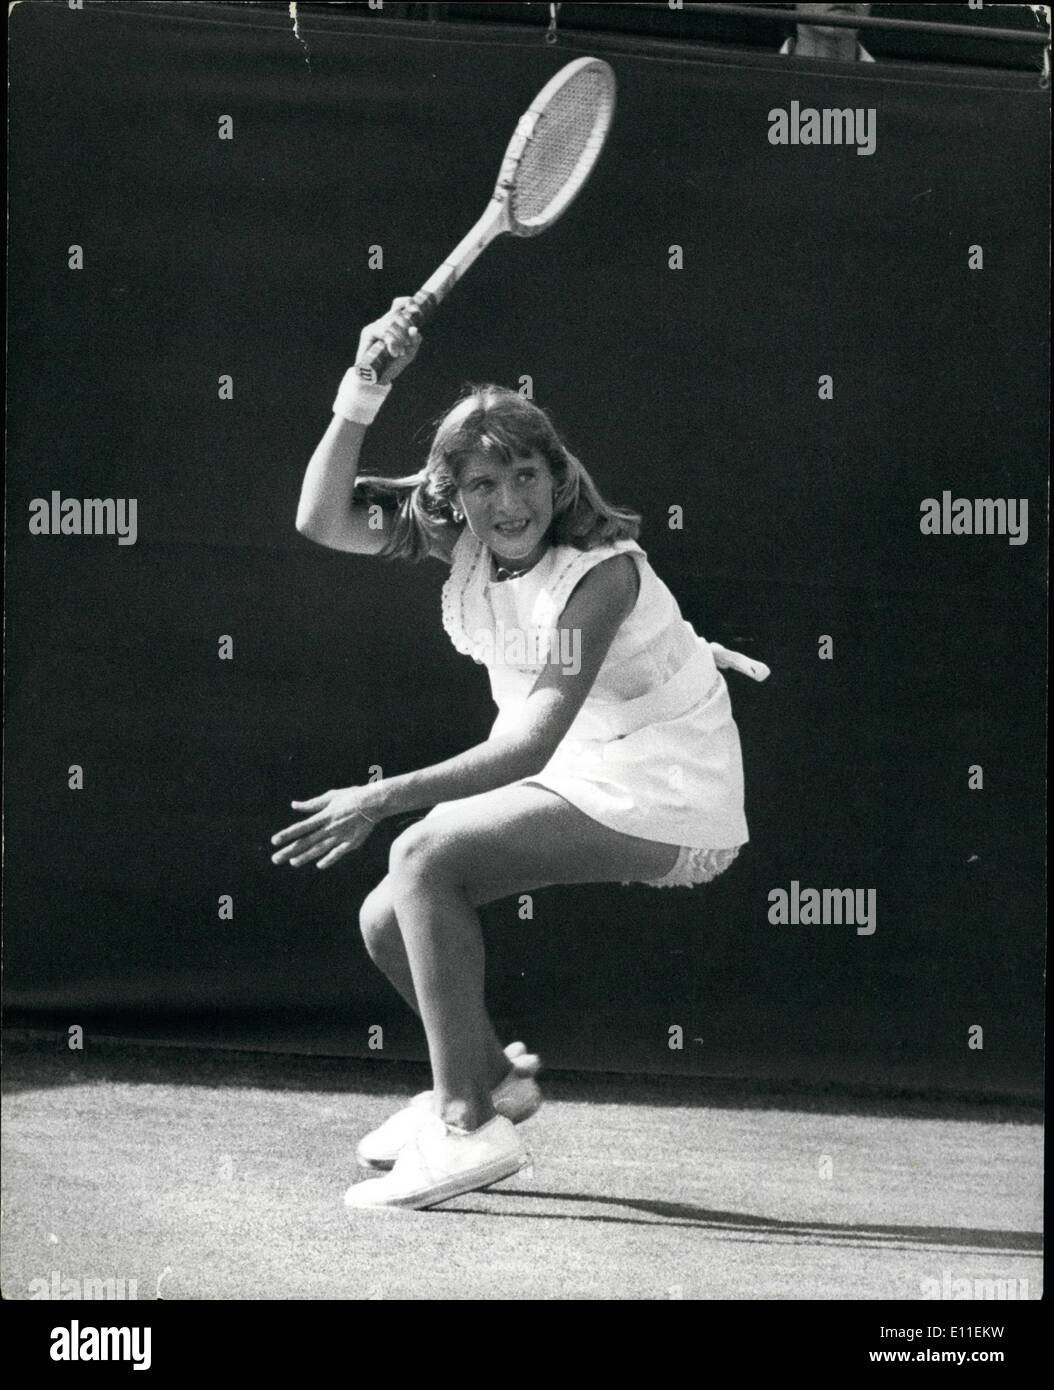 6. Juni 1977 - Tracy Austin 14-Year-Old American Tennis-Star gewinnt ihr erstes Match in Wimbledon. Foto zeigt: Tracy Austin die 14 jährige amerikanische Tennis-Star in Aktion gegen Frau Vessies Appal von Holland auf Platz 7 gesehen. Sie gewann 6-3, 6-3. Uhr / Keystone Stockfoto